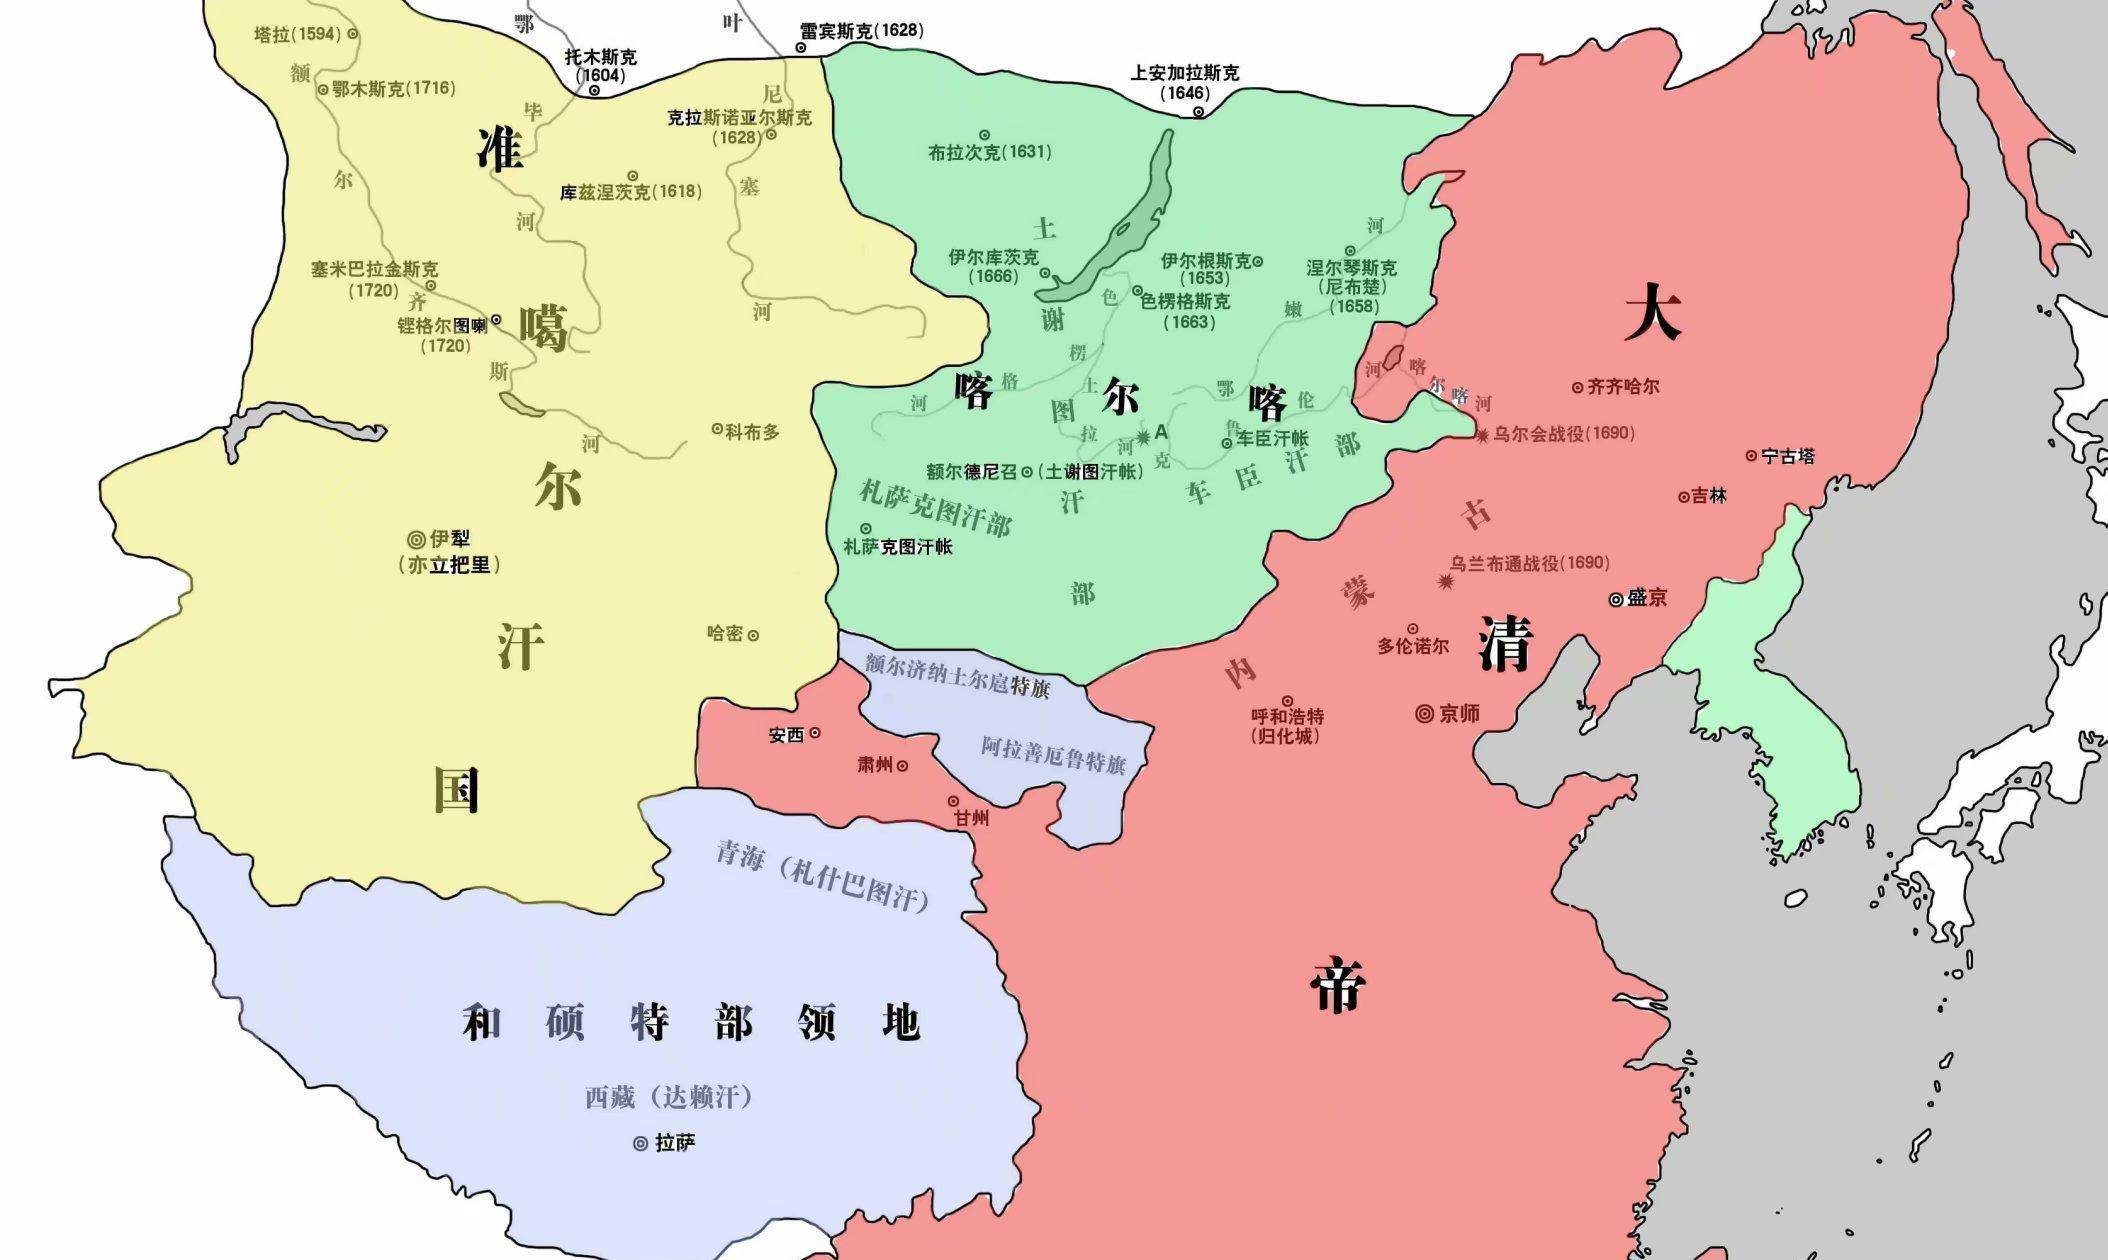 从后金到宣统皇帝退位,清朝百年版图变迁,奠定现代中国疆域